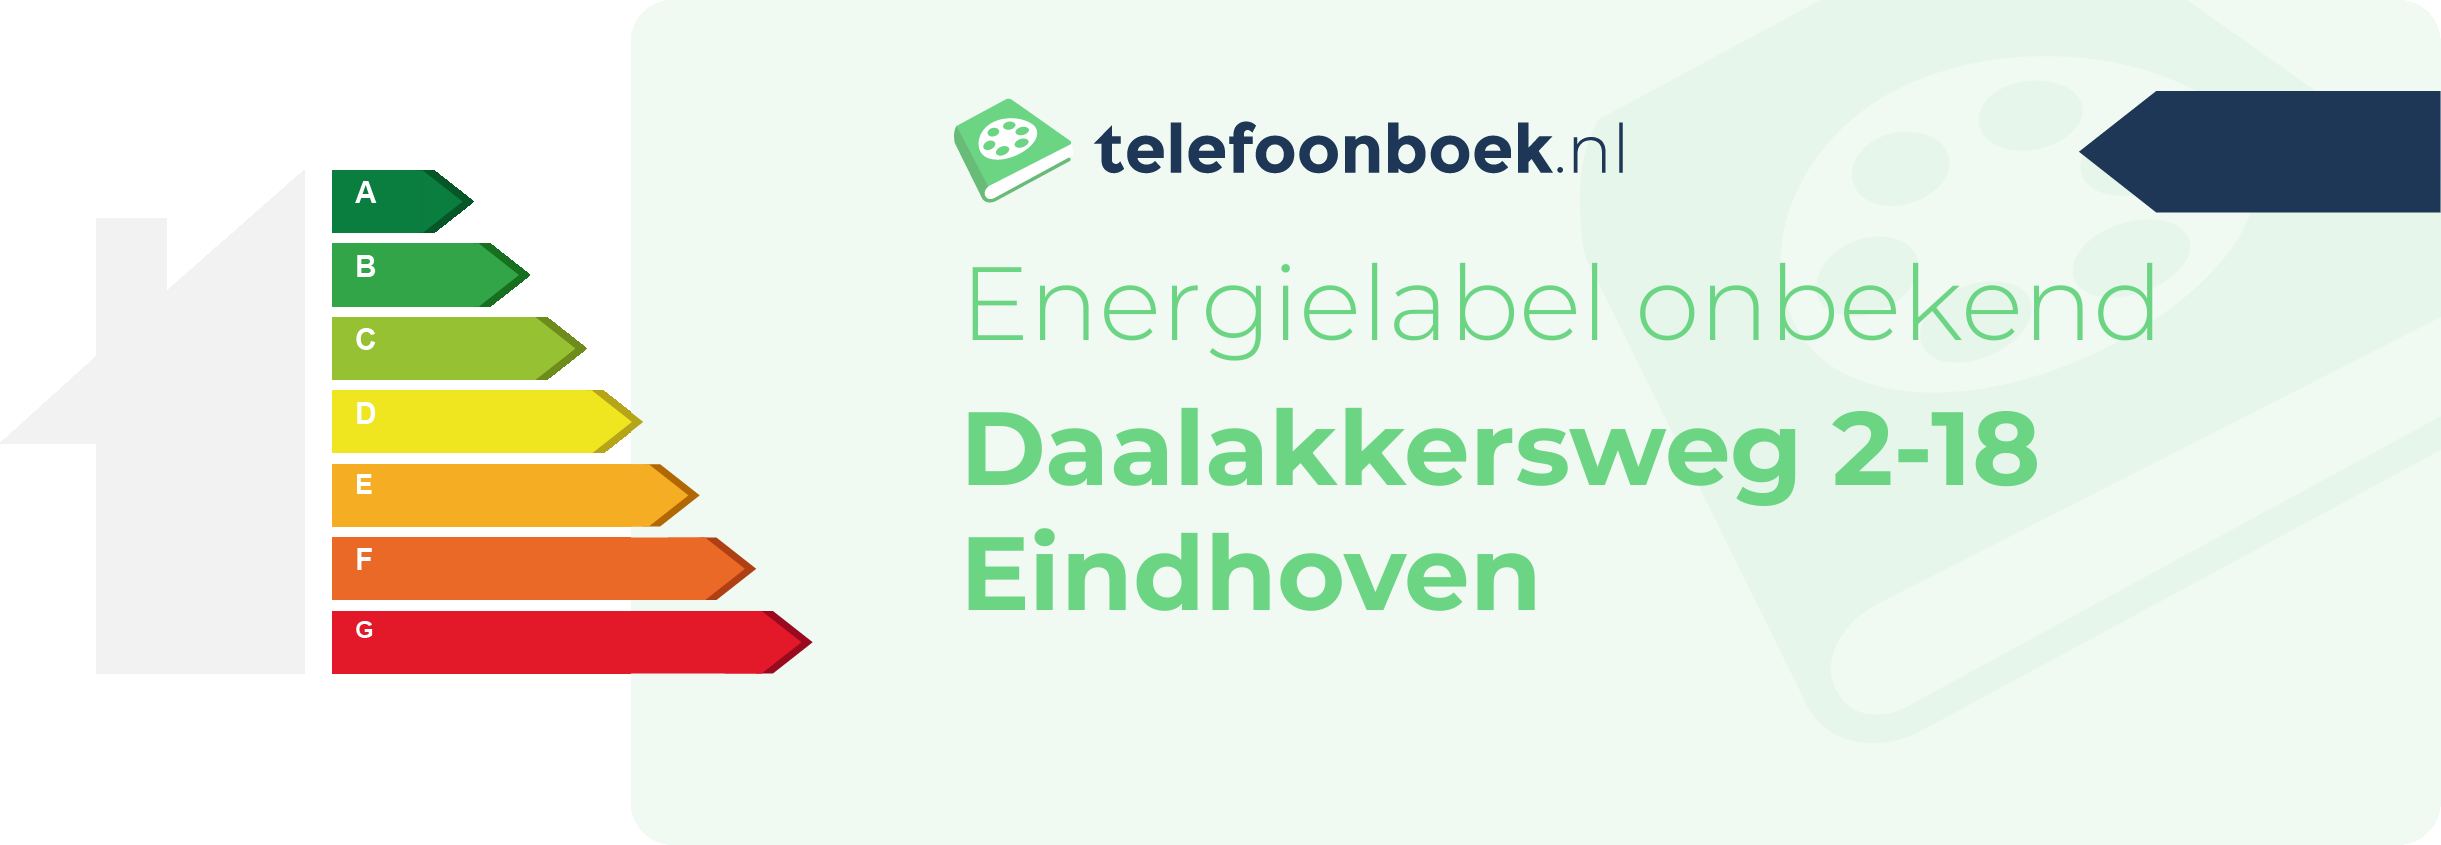 Energielabel Daalakkersweg 2-18 Eindhoven